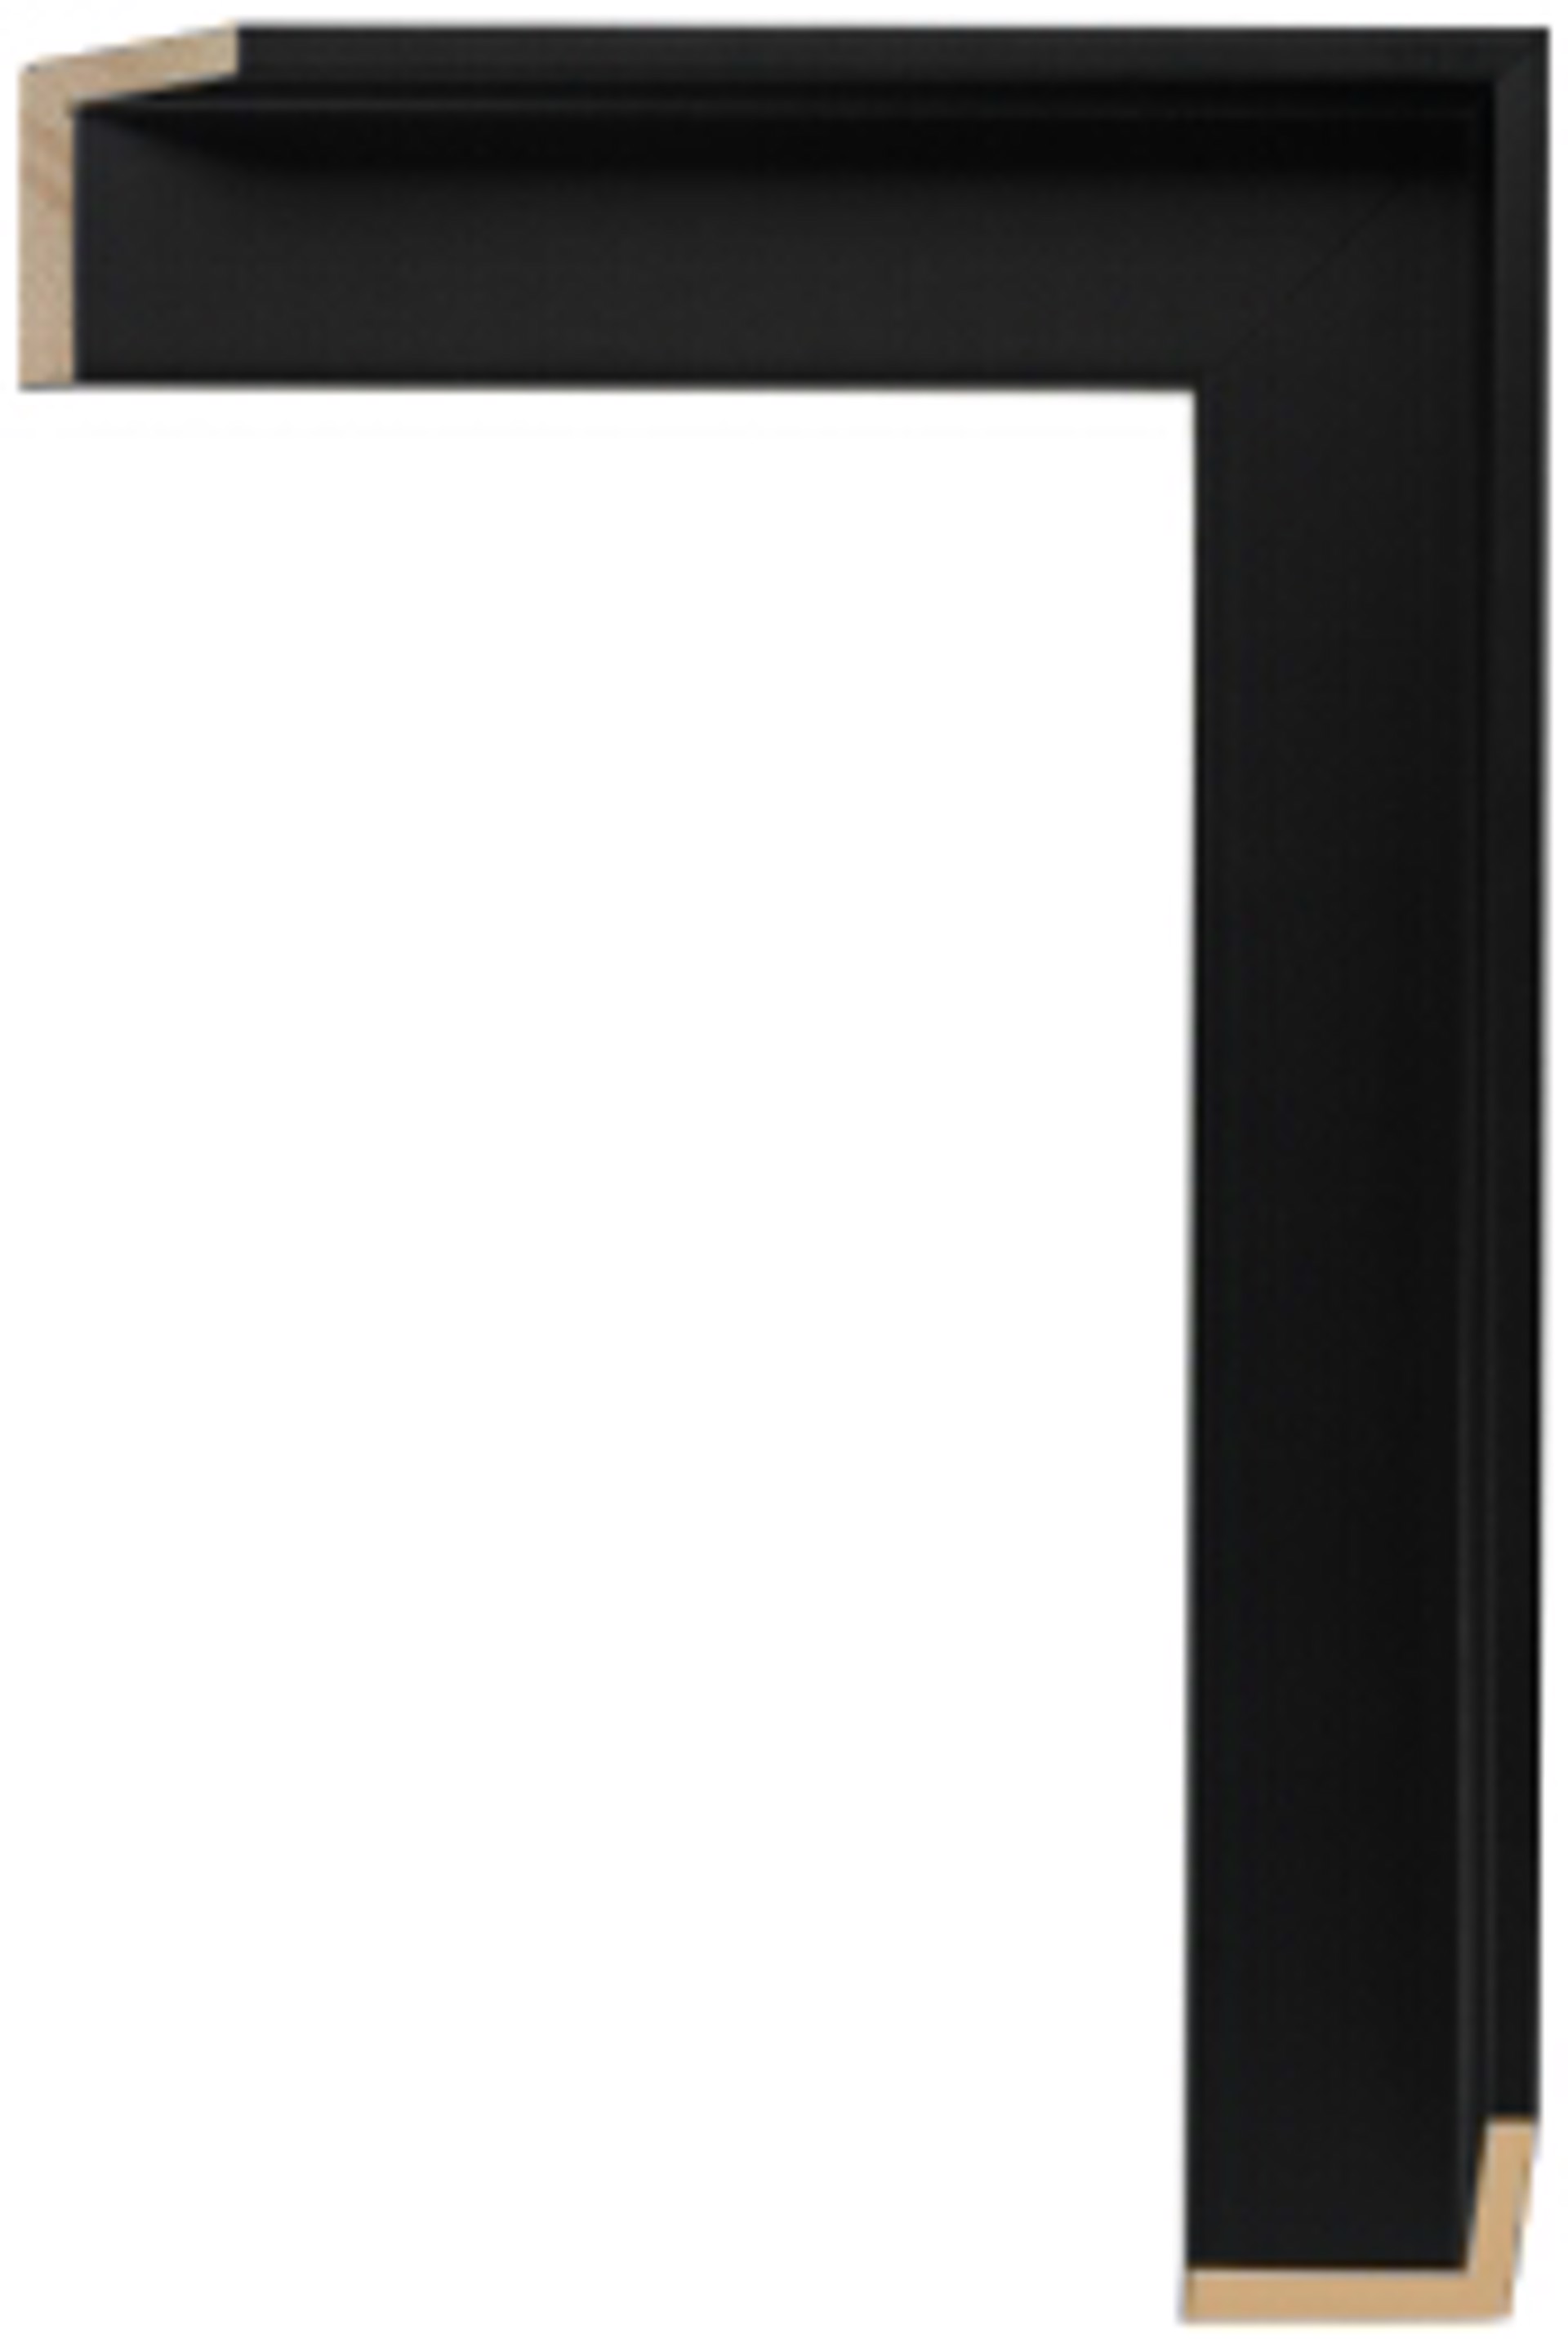 Black Frame - Black 1/2" 6519